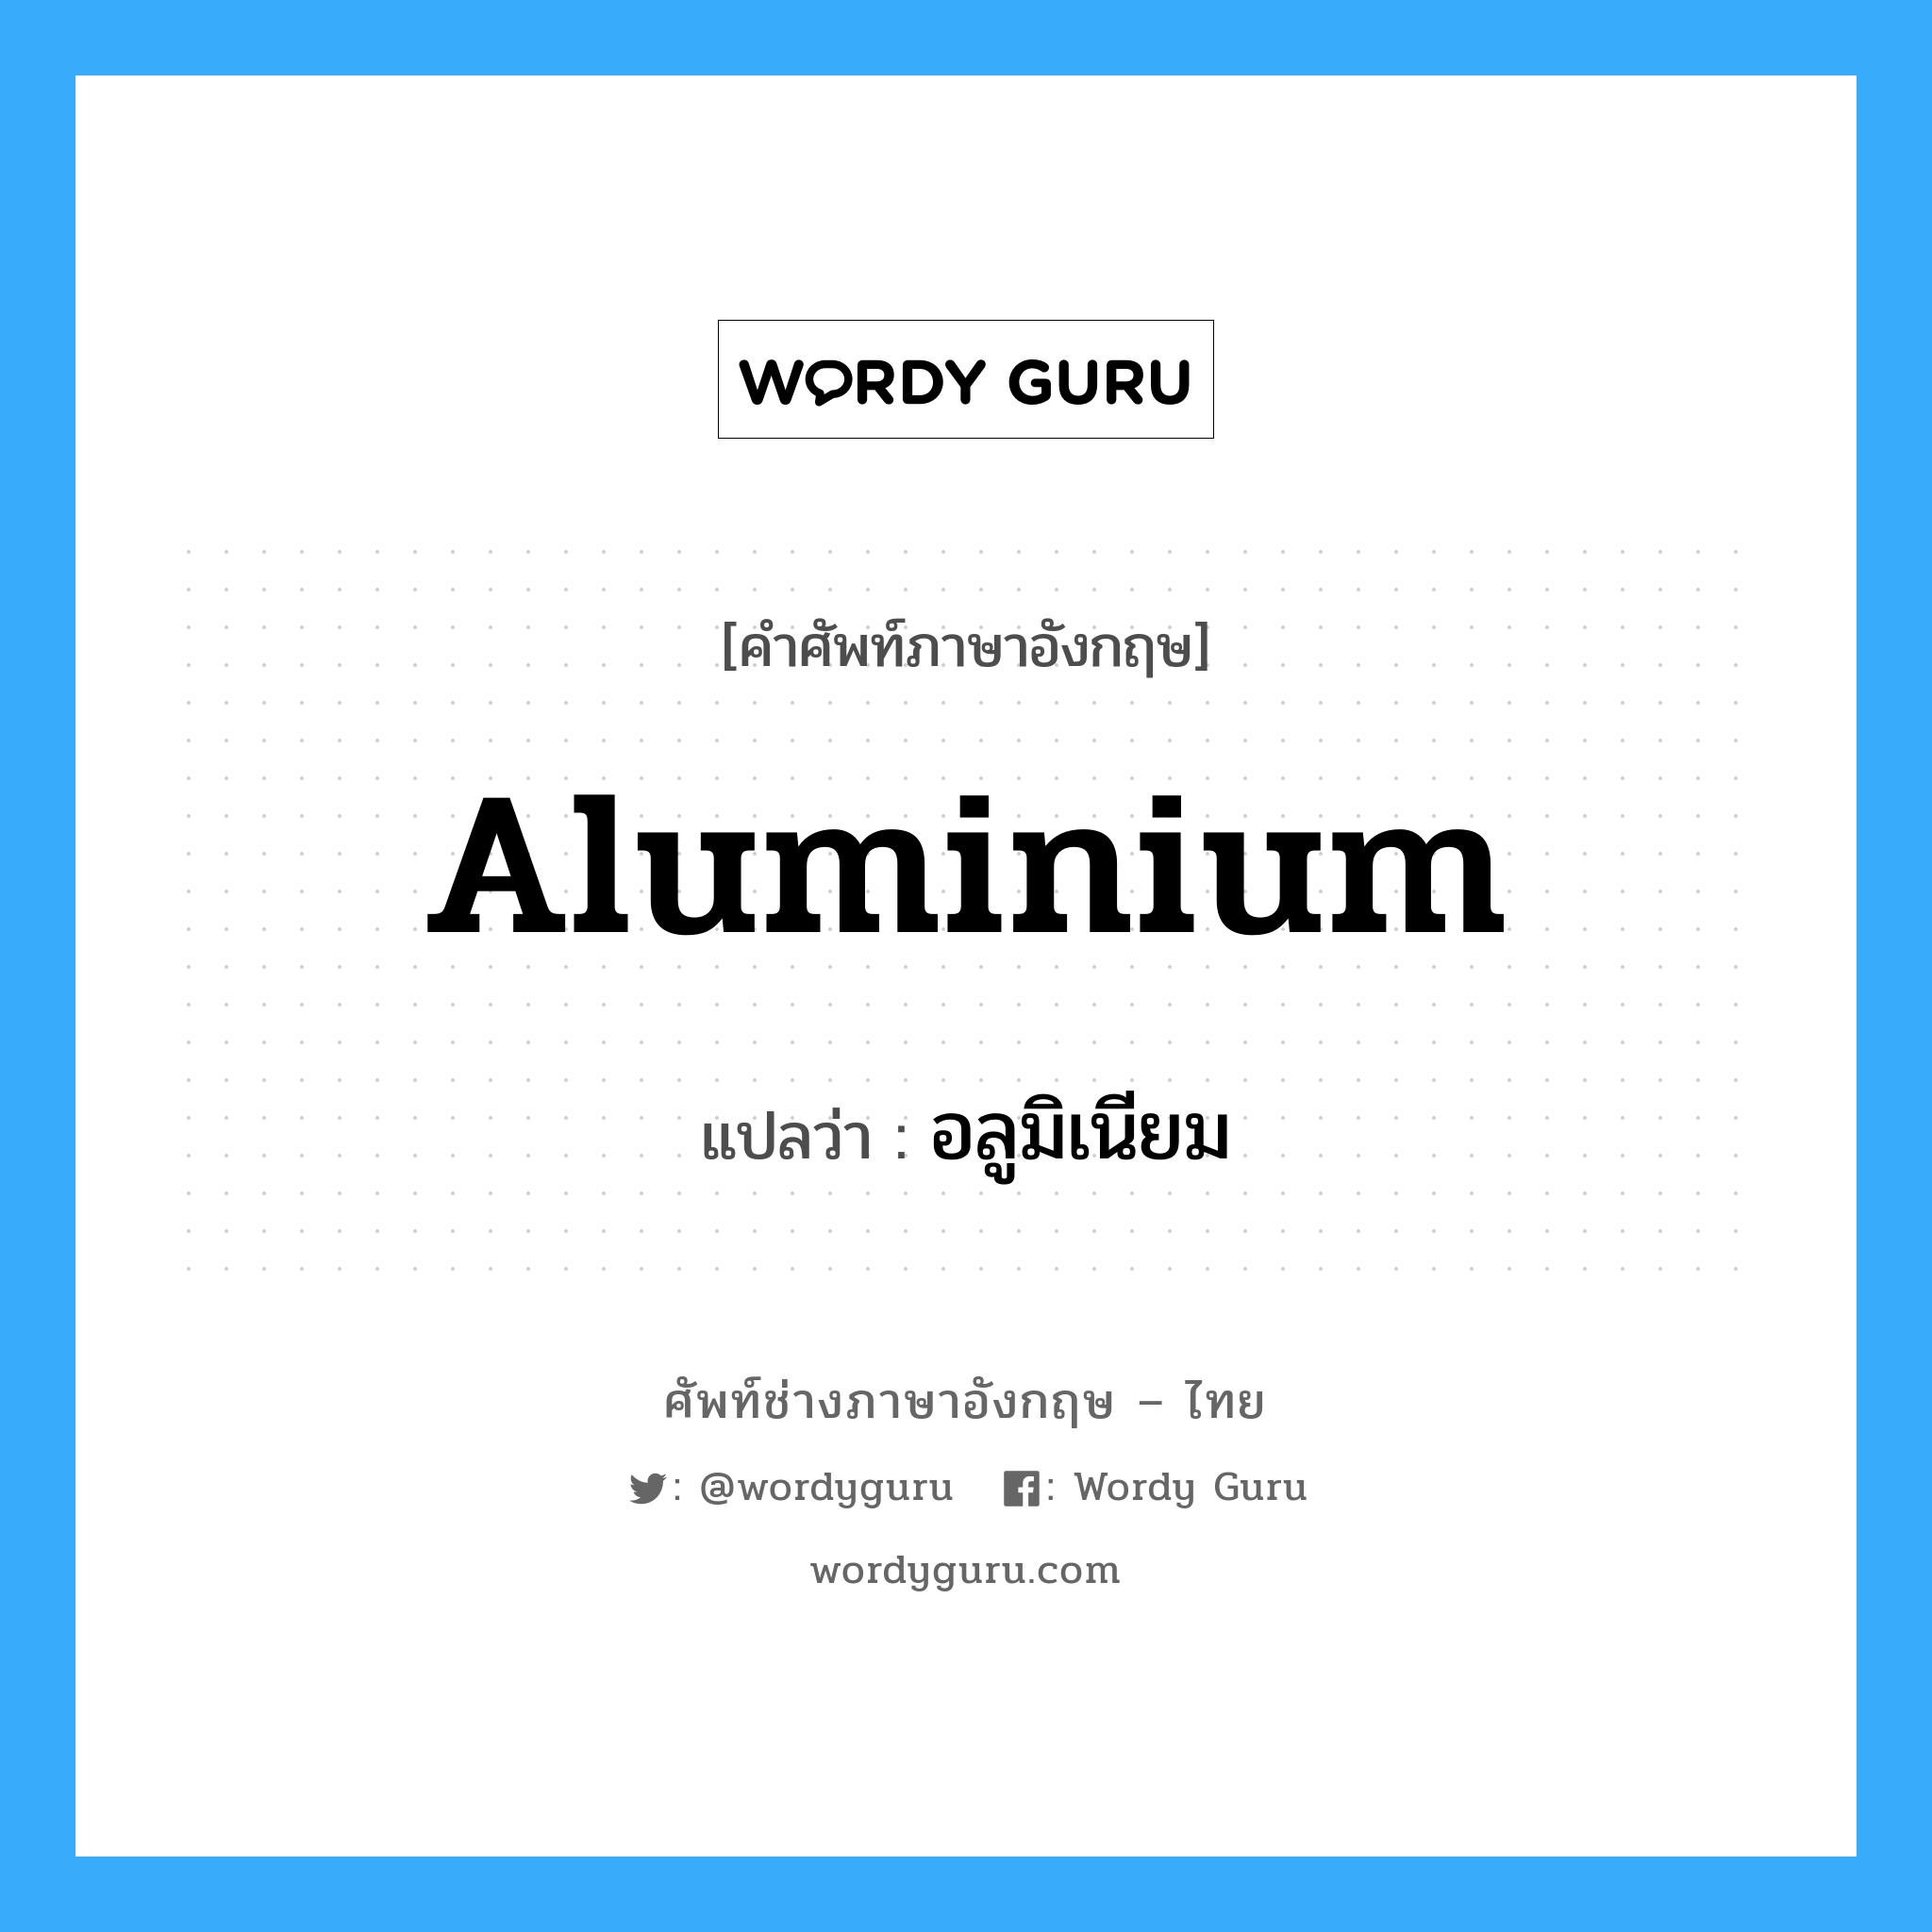 อลูมิเนียม ภาษาอังกฤษ?, คำศัพท์ช่างภาษาอังกฤษ - ไทย อลูมิเนียม คำศัพท์ภาษาอังกฤษ อลูมิเนียม แปลว่า aluminium